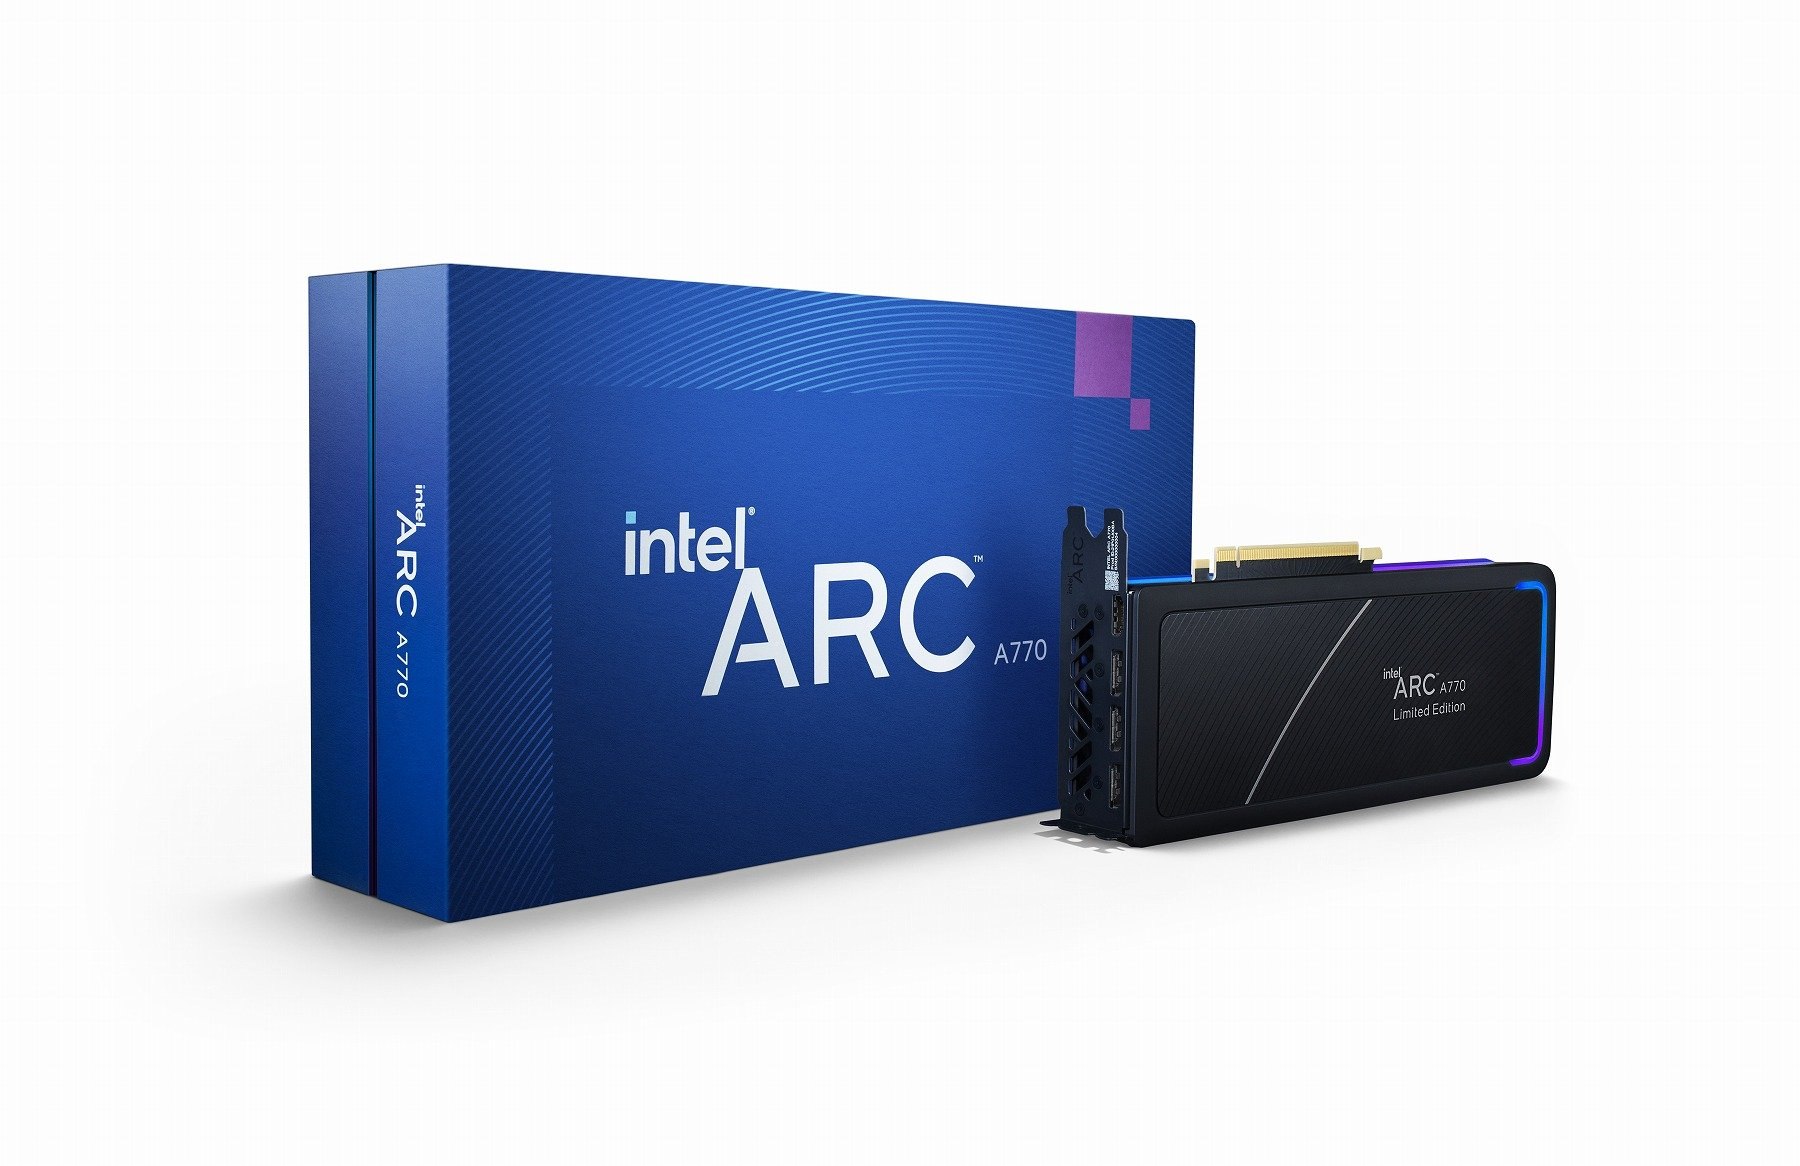 Intel arc tm. Intel Arc a770 16gb. Intel Arc a770 Limited Edition. Intel Arc a750. Intel Ark a750.